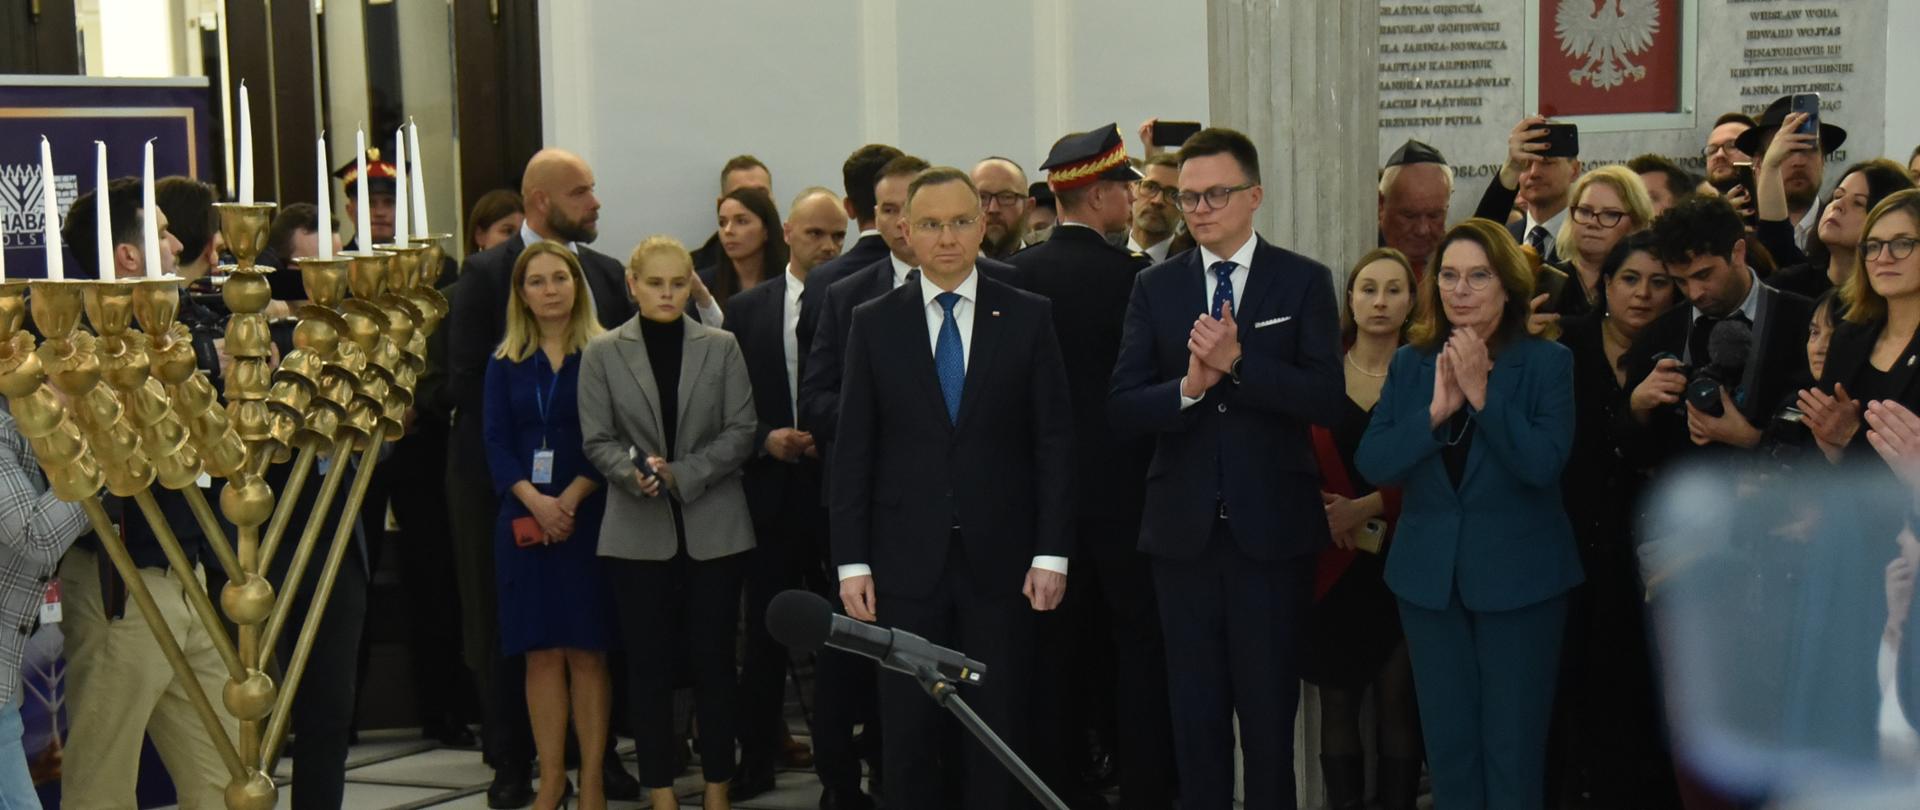 W białej sali stoi dużo ludzi, pośrodku marszałek Hołownia i prezydent Duda, przed nimi złoty dziewięcioramienny świecznik.